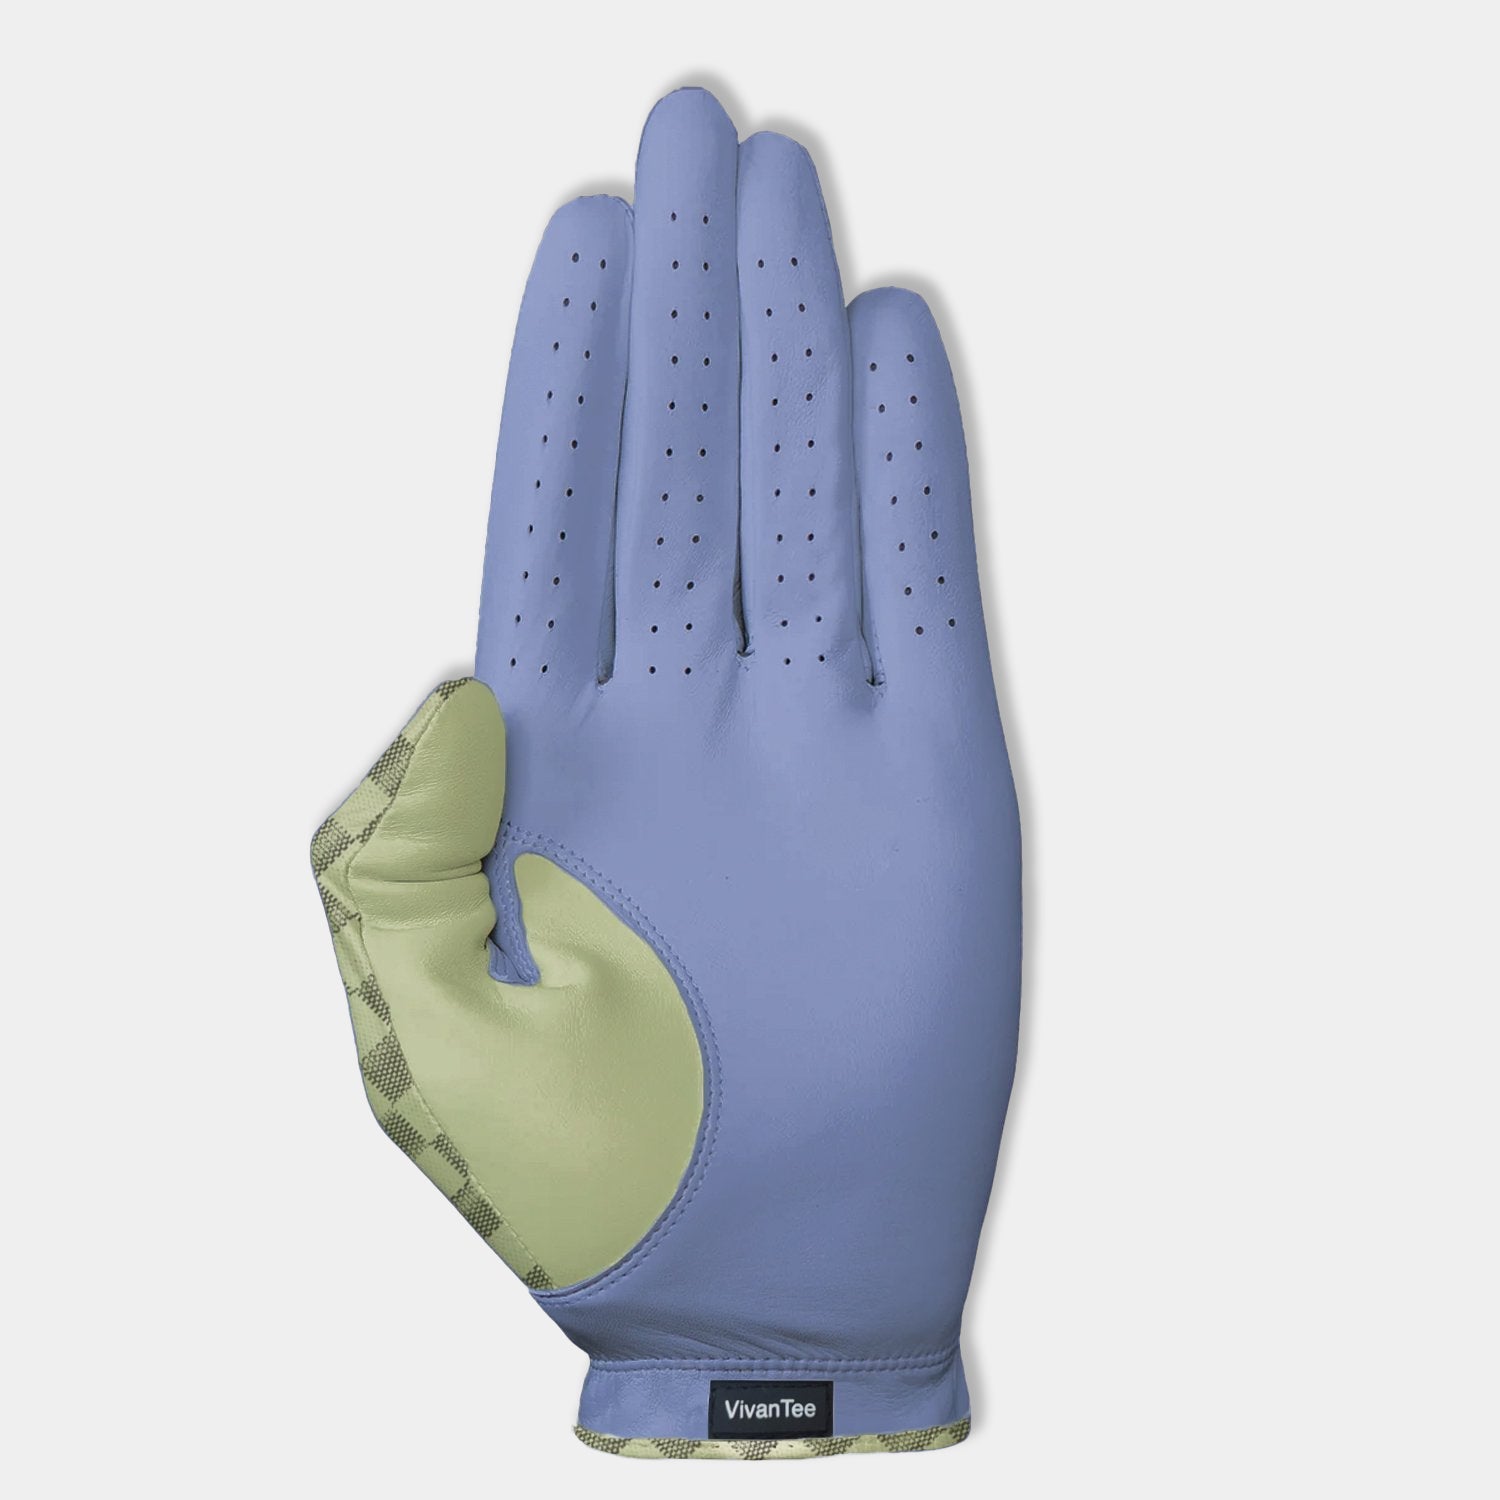 Bottom of women's Purple designer golf glove.